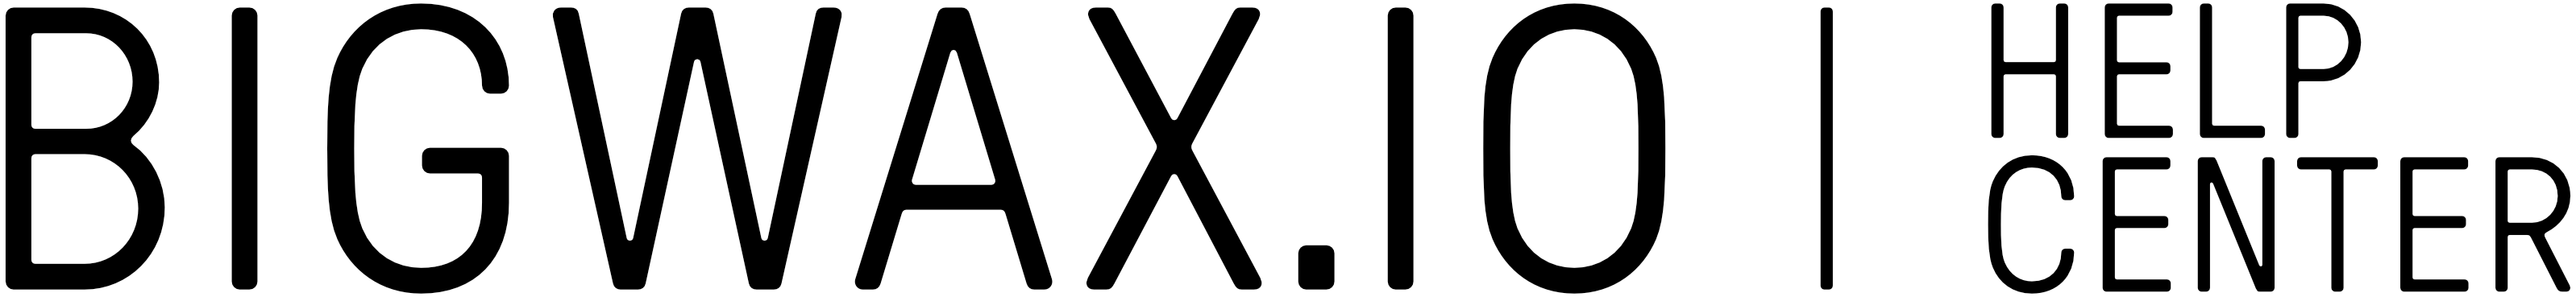 Bigwax.io logo